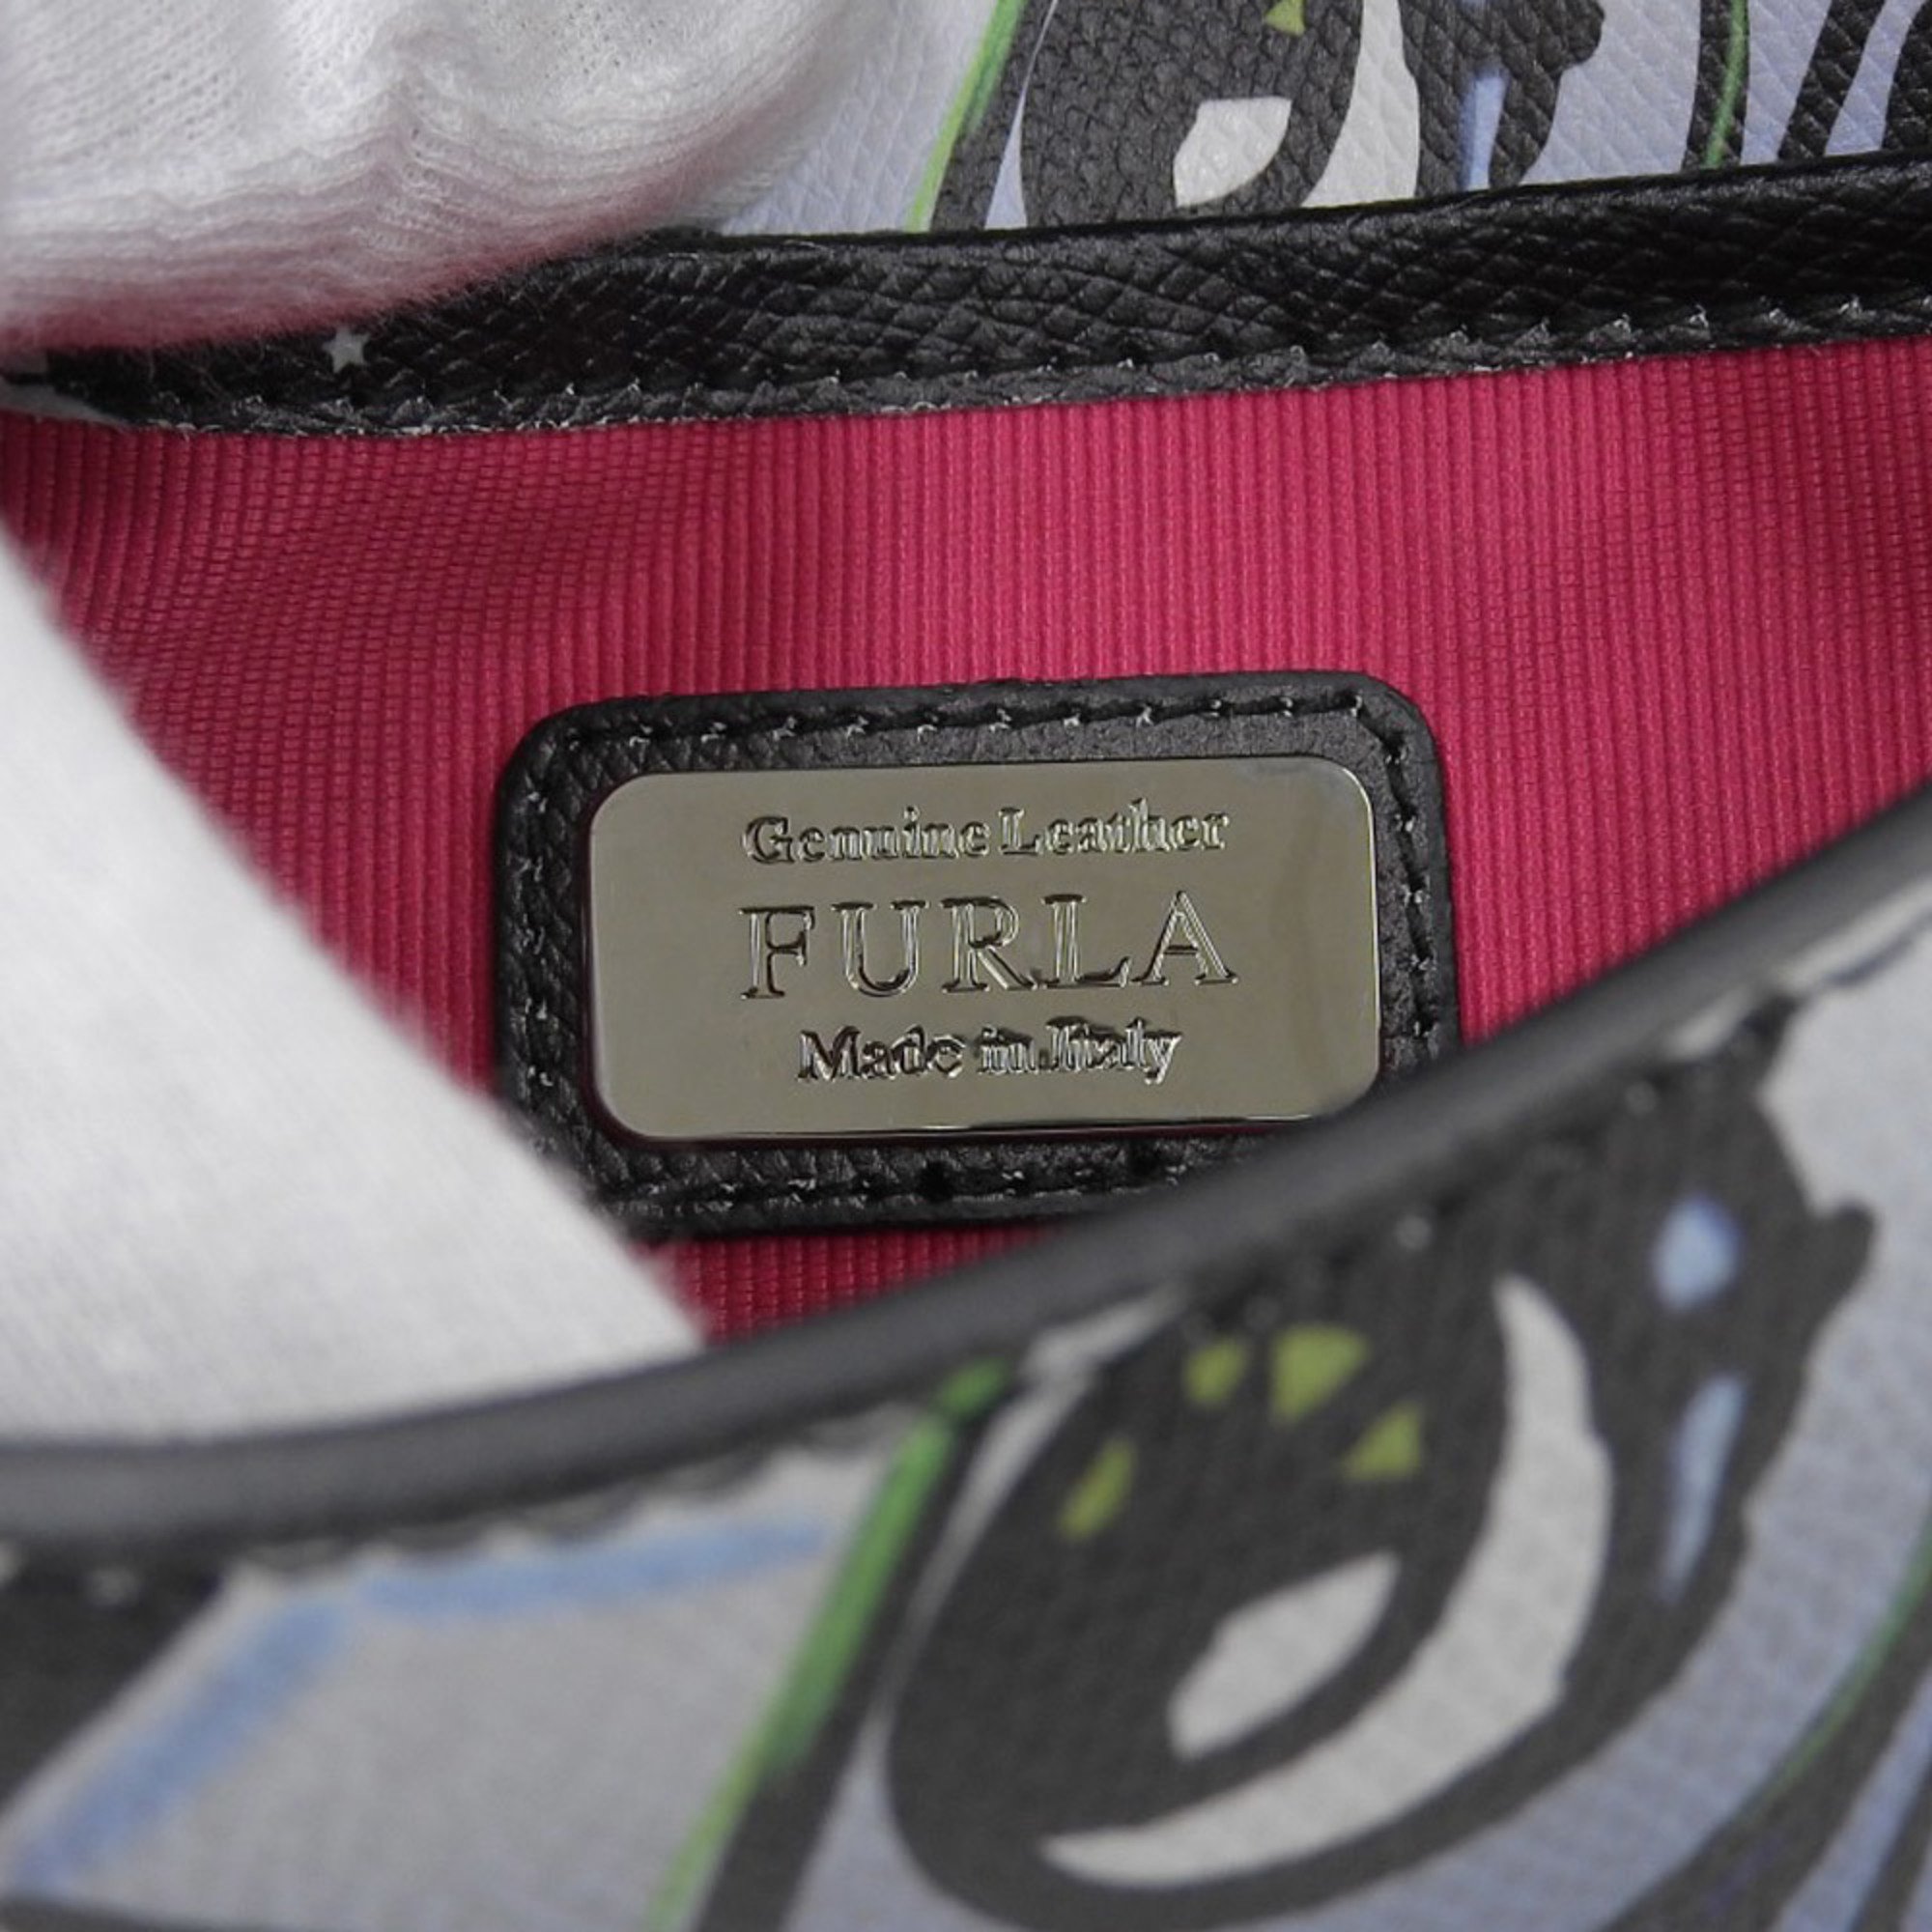 FURLA Metropolis Patterned Chain Shoulder Bag Pouch Black